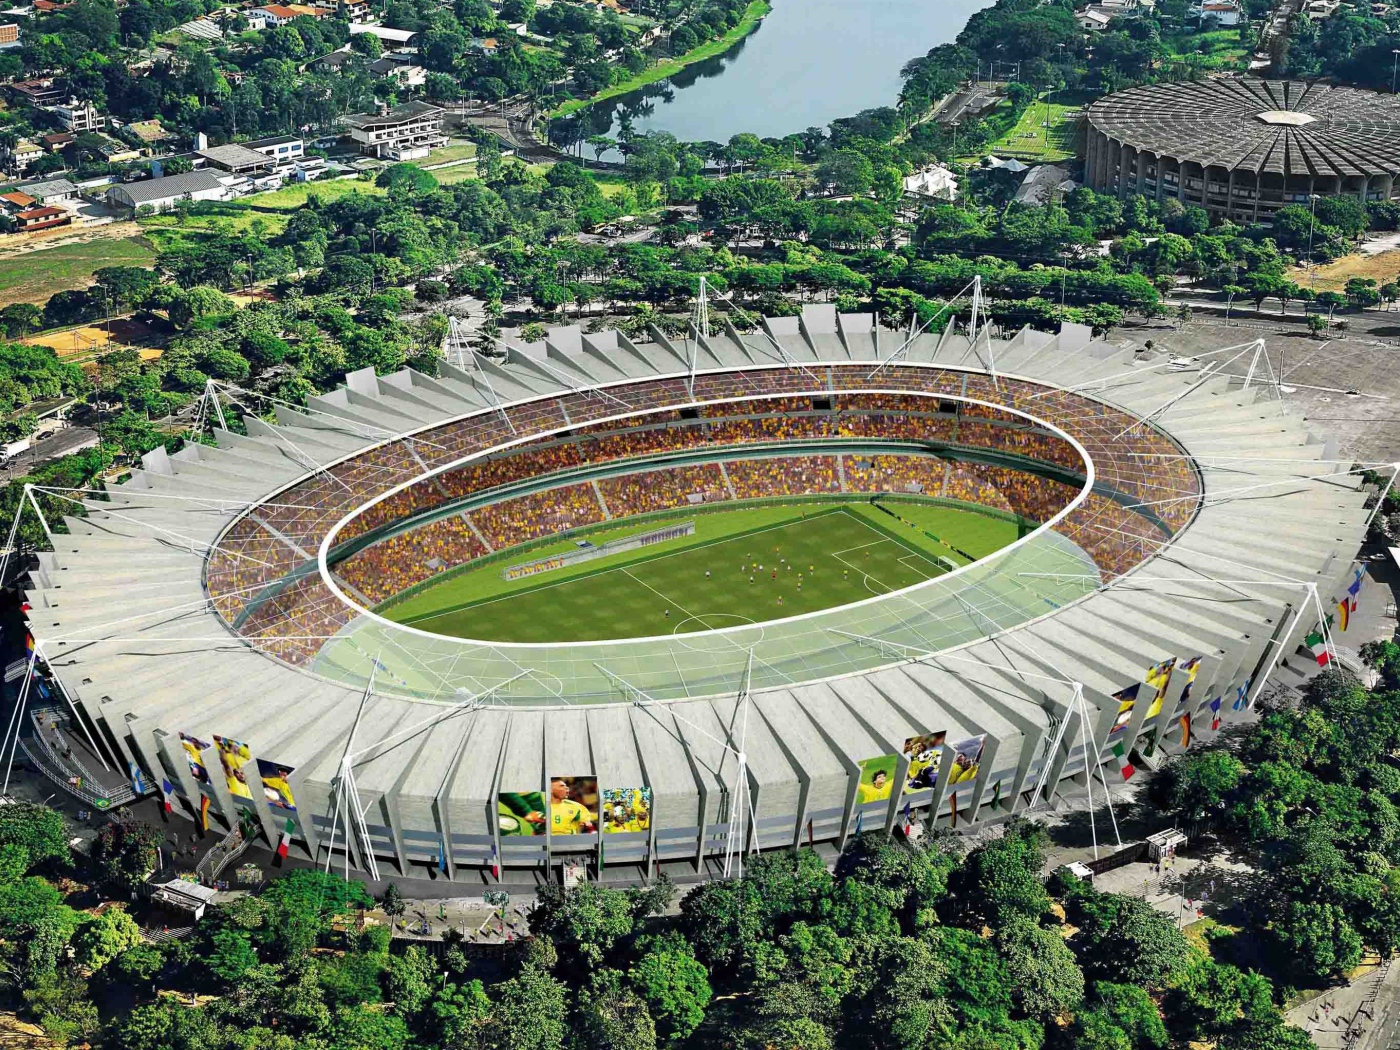 Красивый стадион на Чемпионате мира по футболу в Бразилии 2014